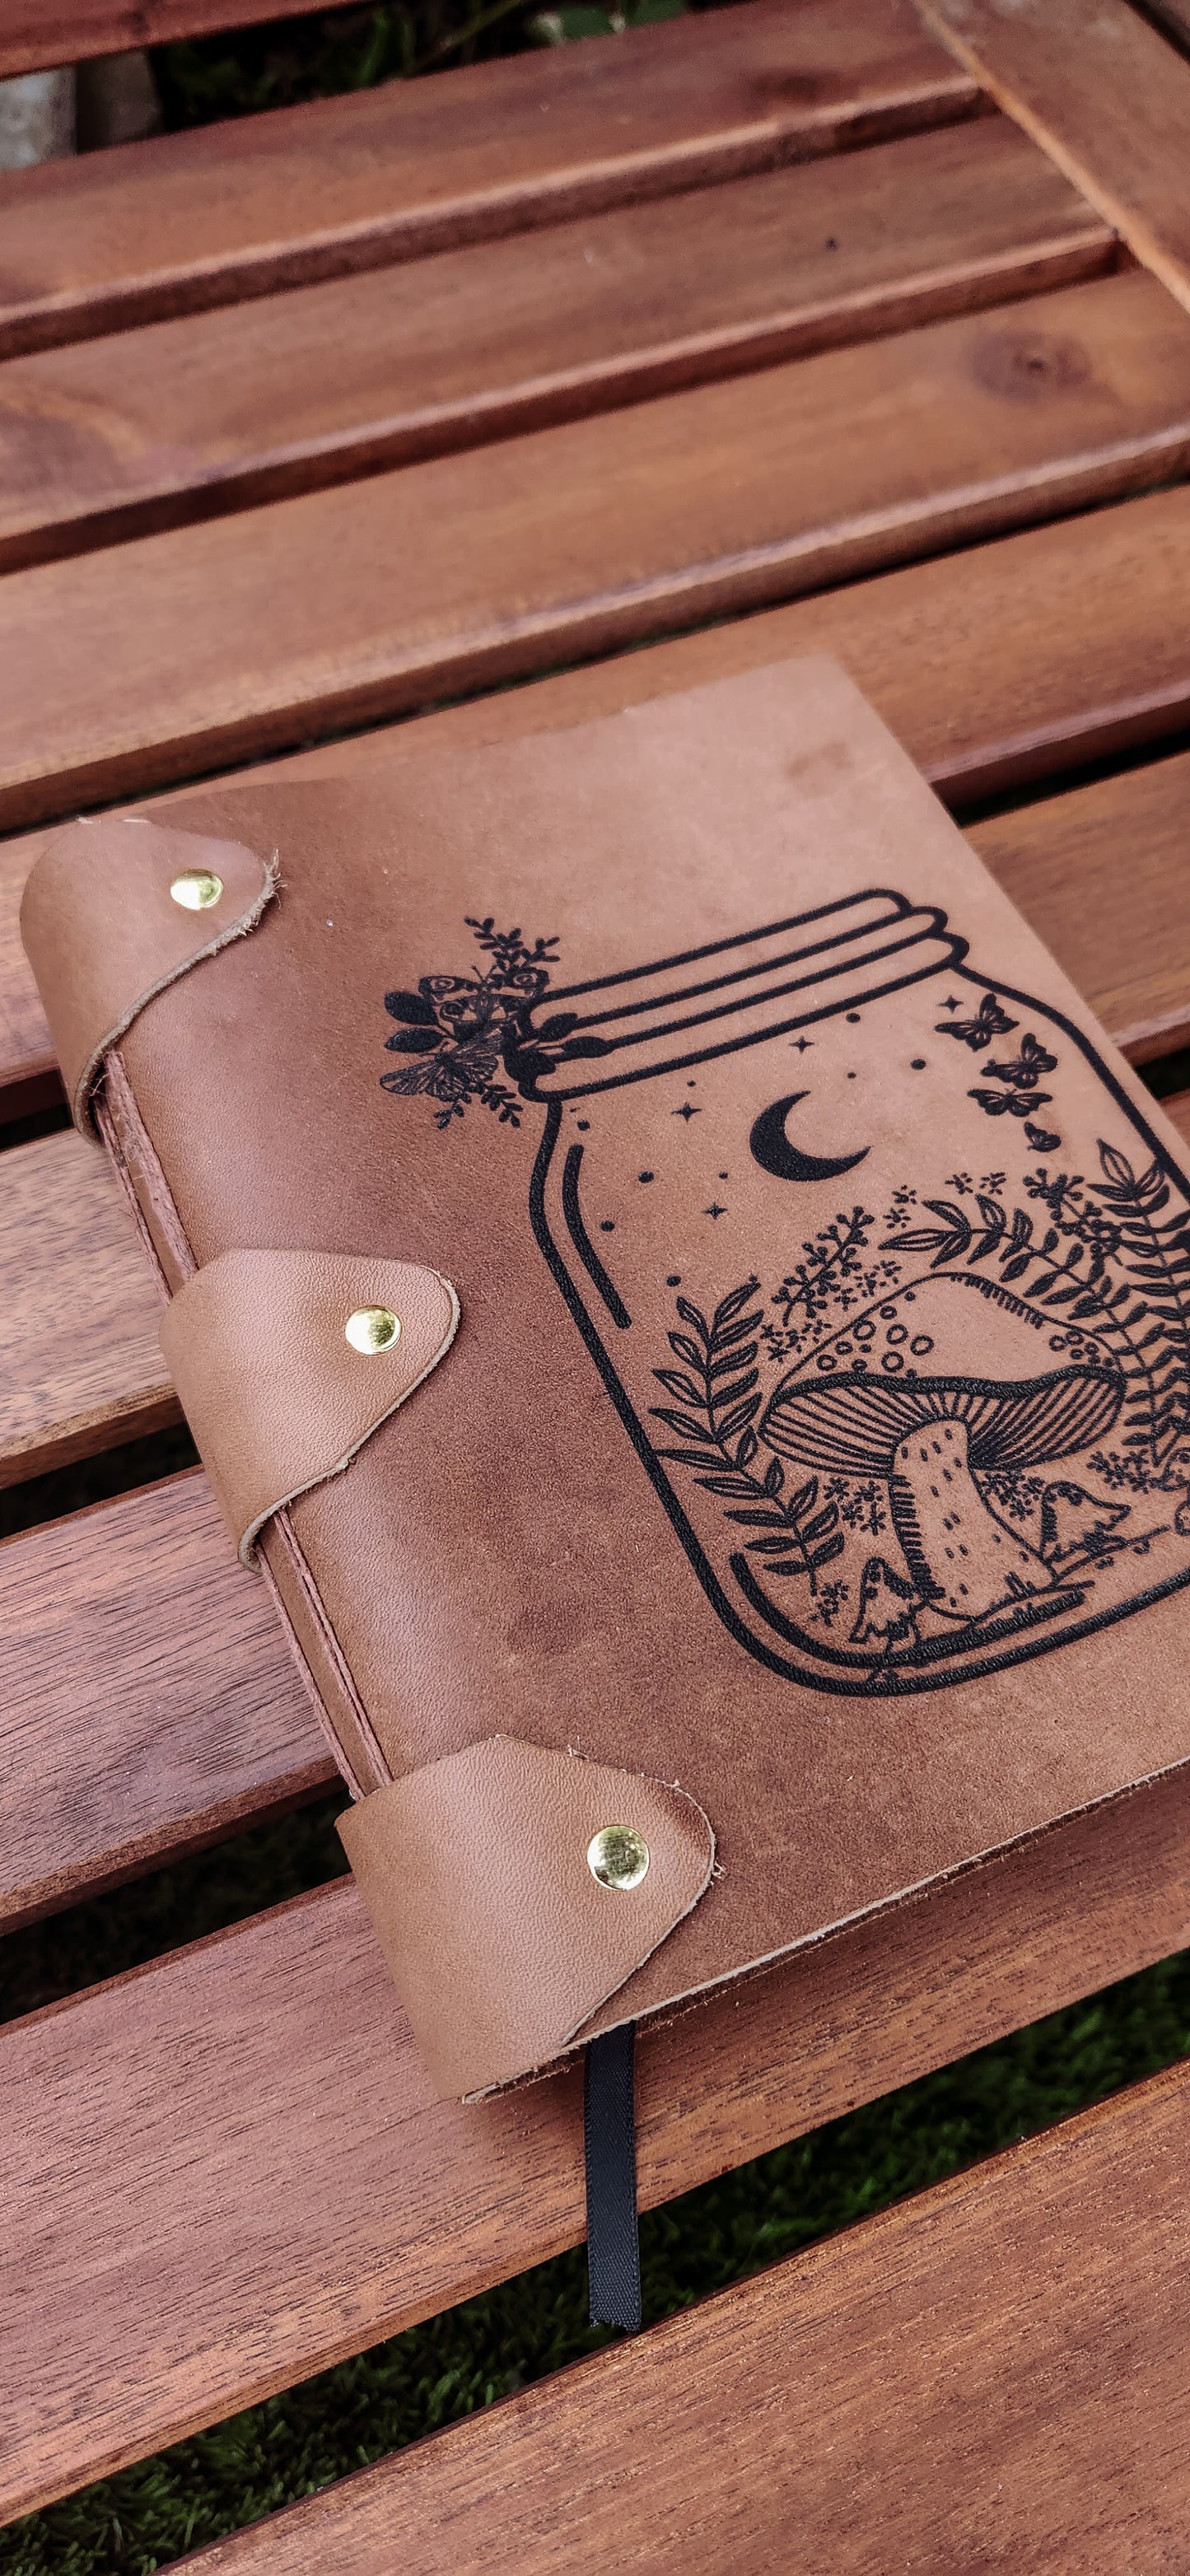 Mushroom bottle leather journal & sketchbook